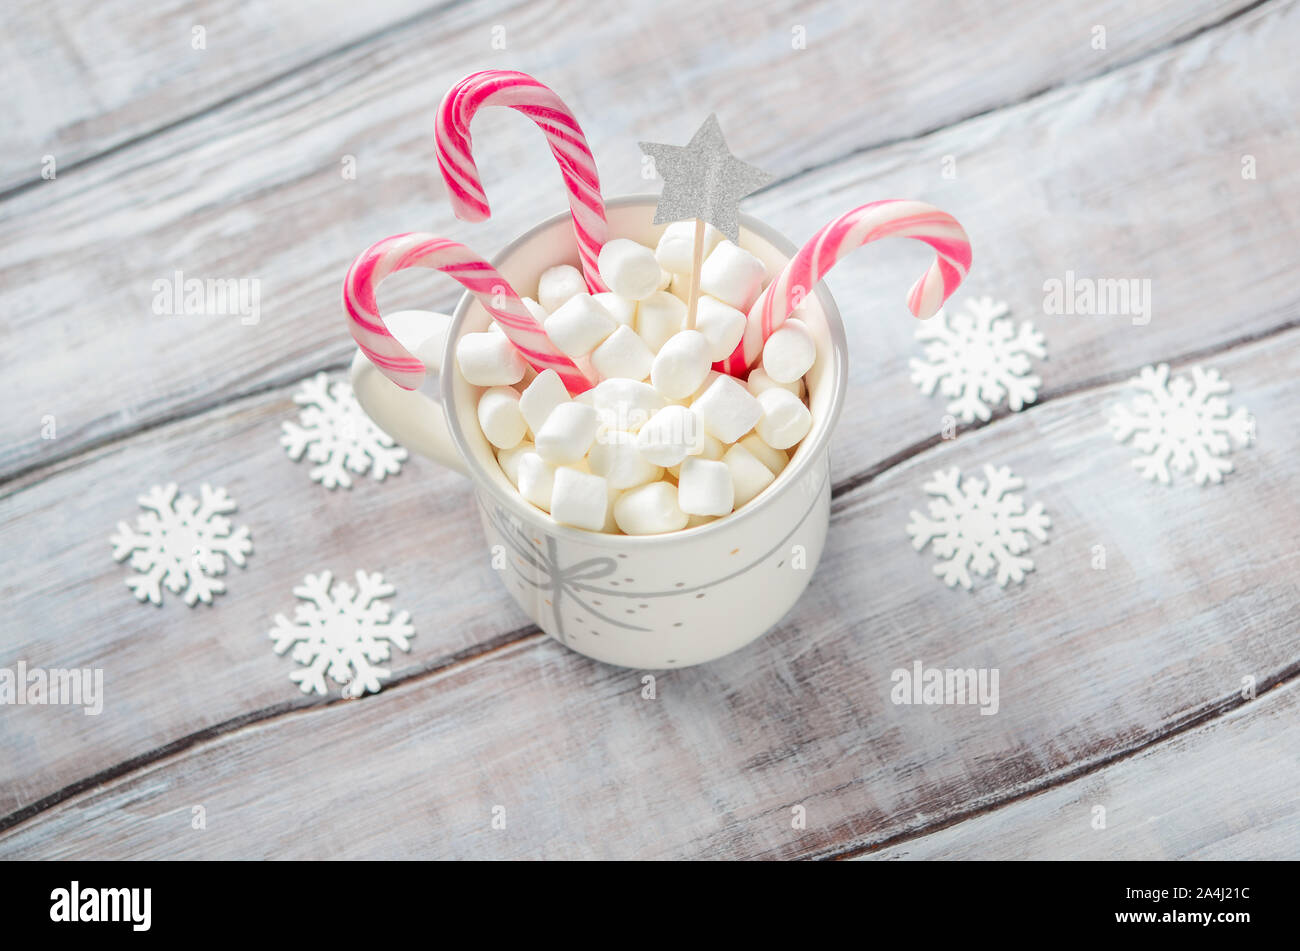 Anno nuovo o il concetto di Natale. Composizione con marshmallows e candy canes su uno sfondo di legno. Foto Stock